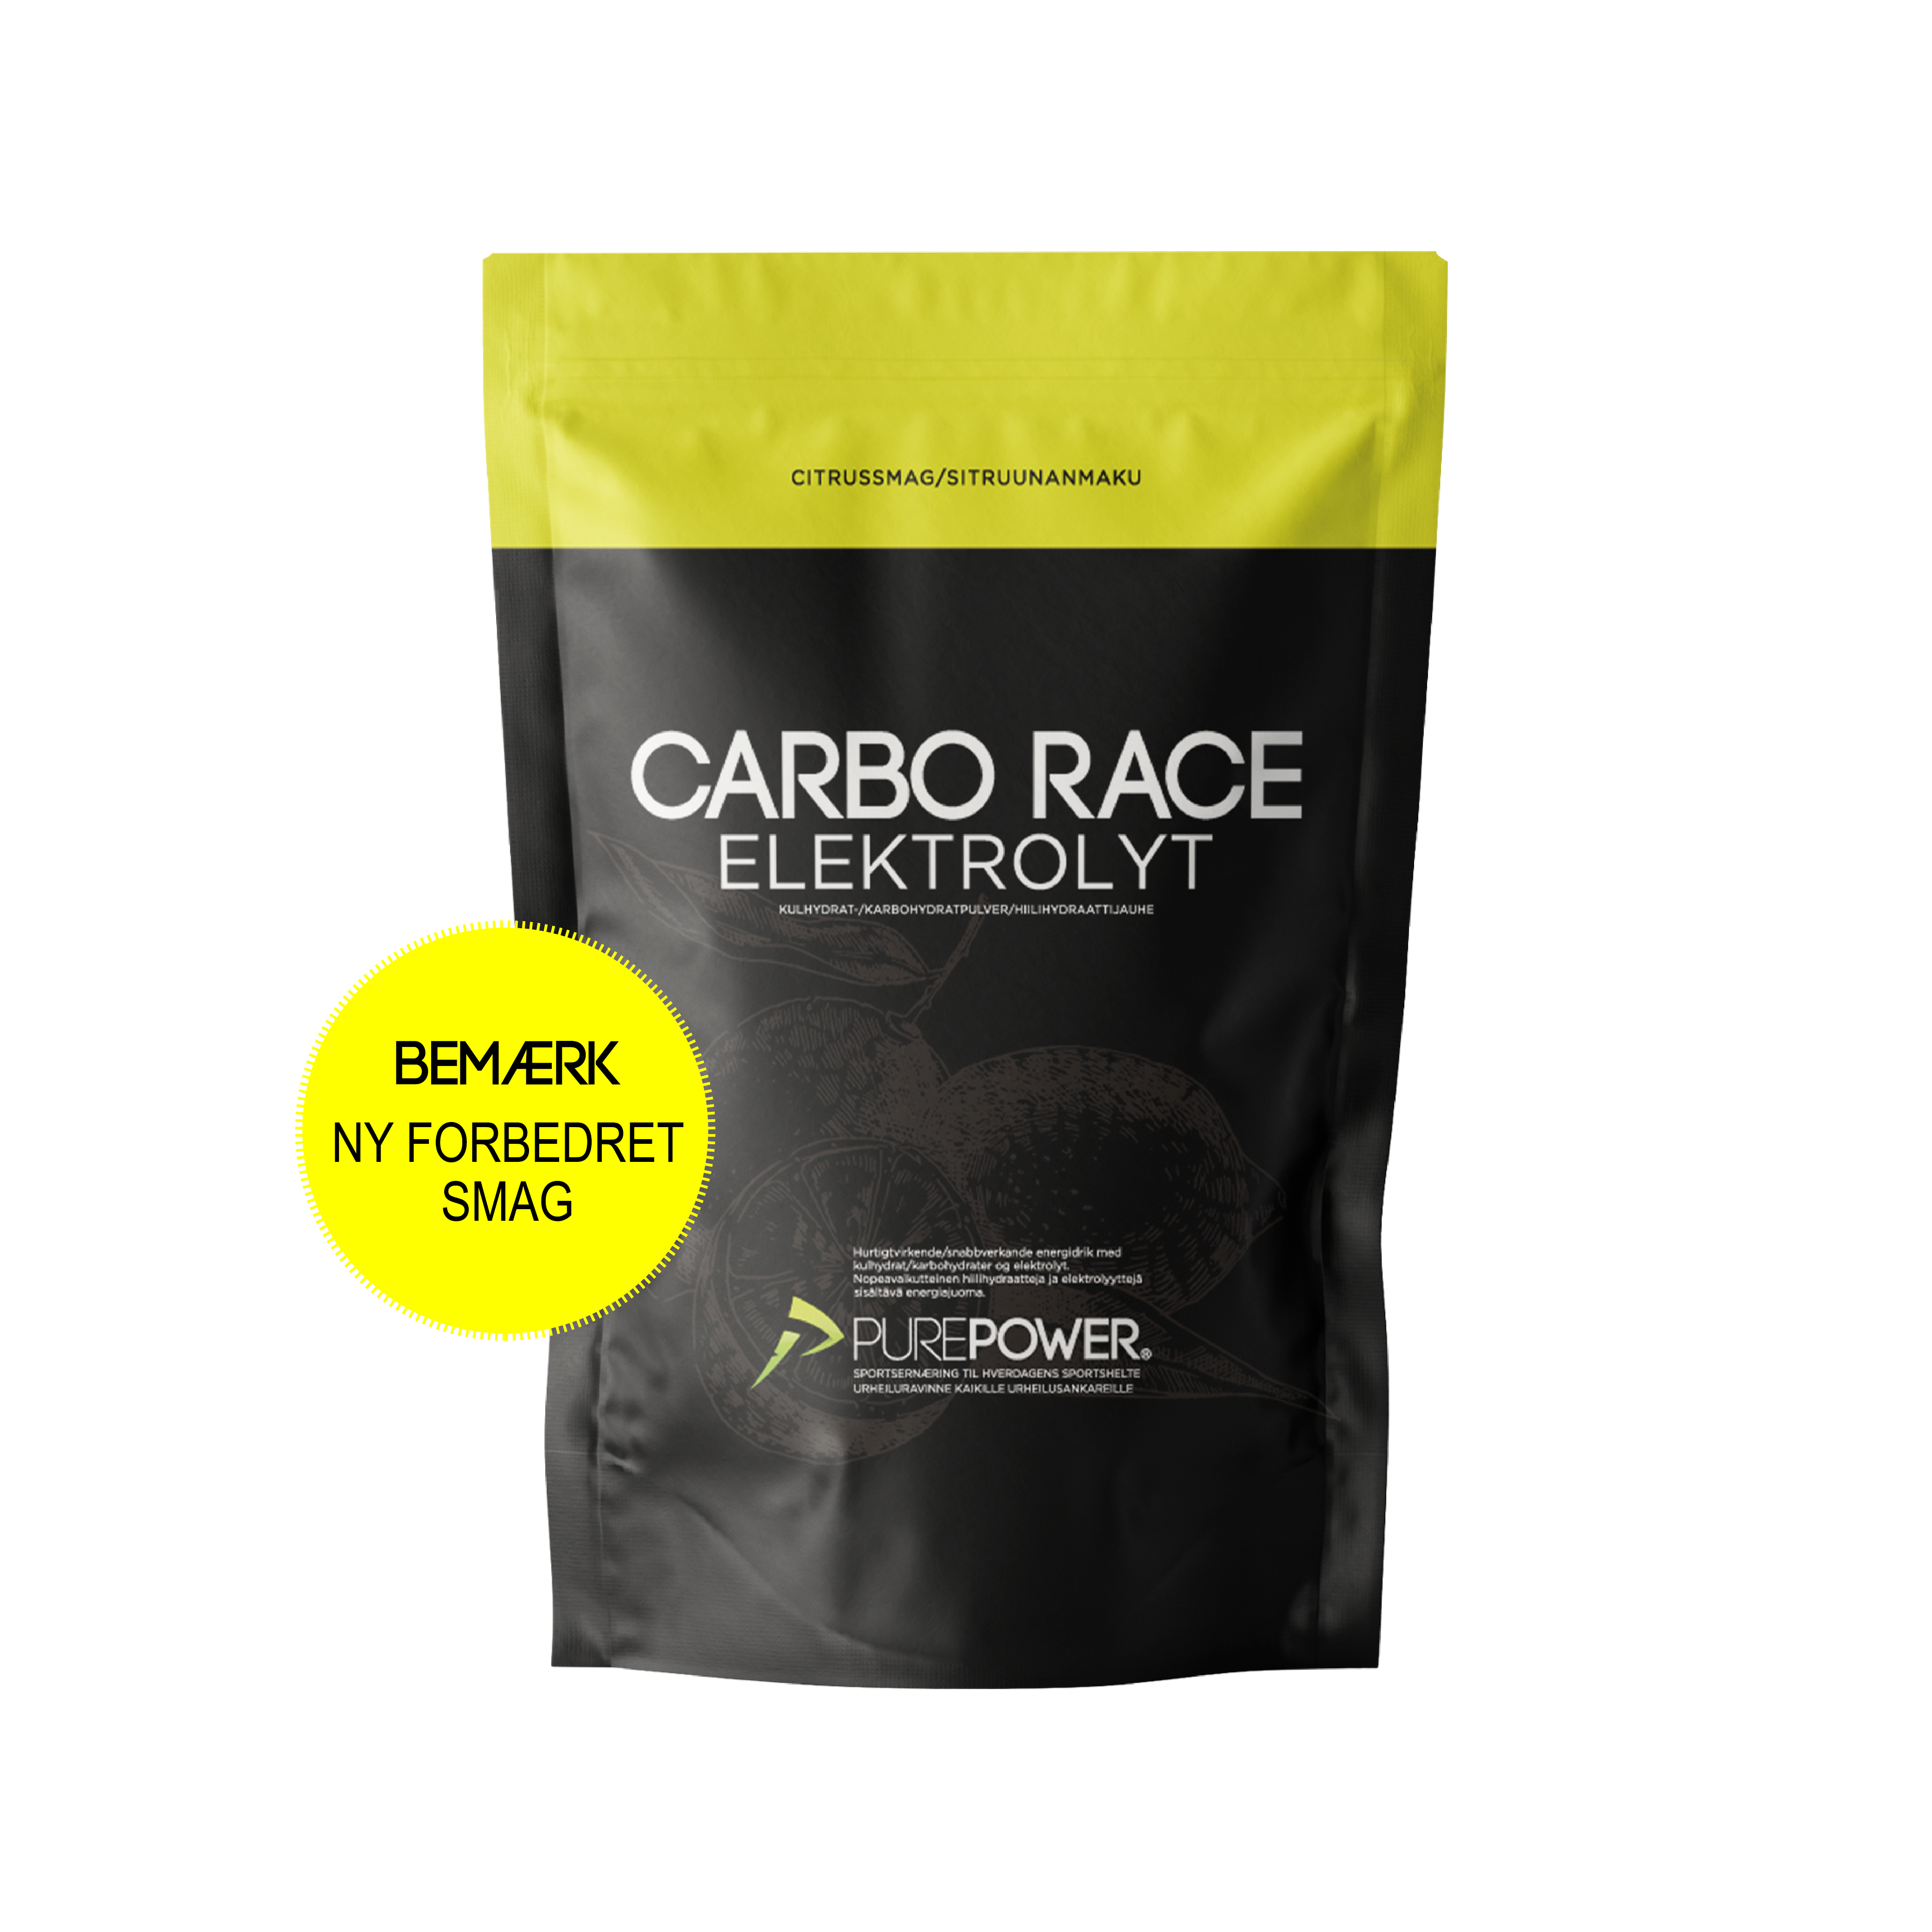 PurePower Carbo Race Elektrolyt Citrus 1 kg